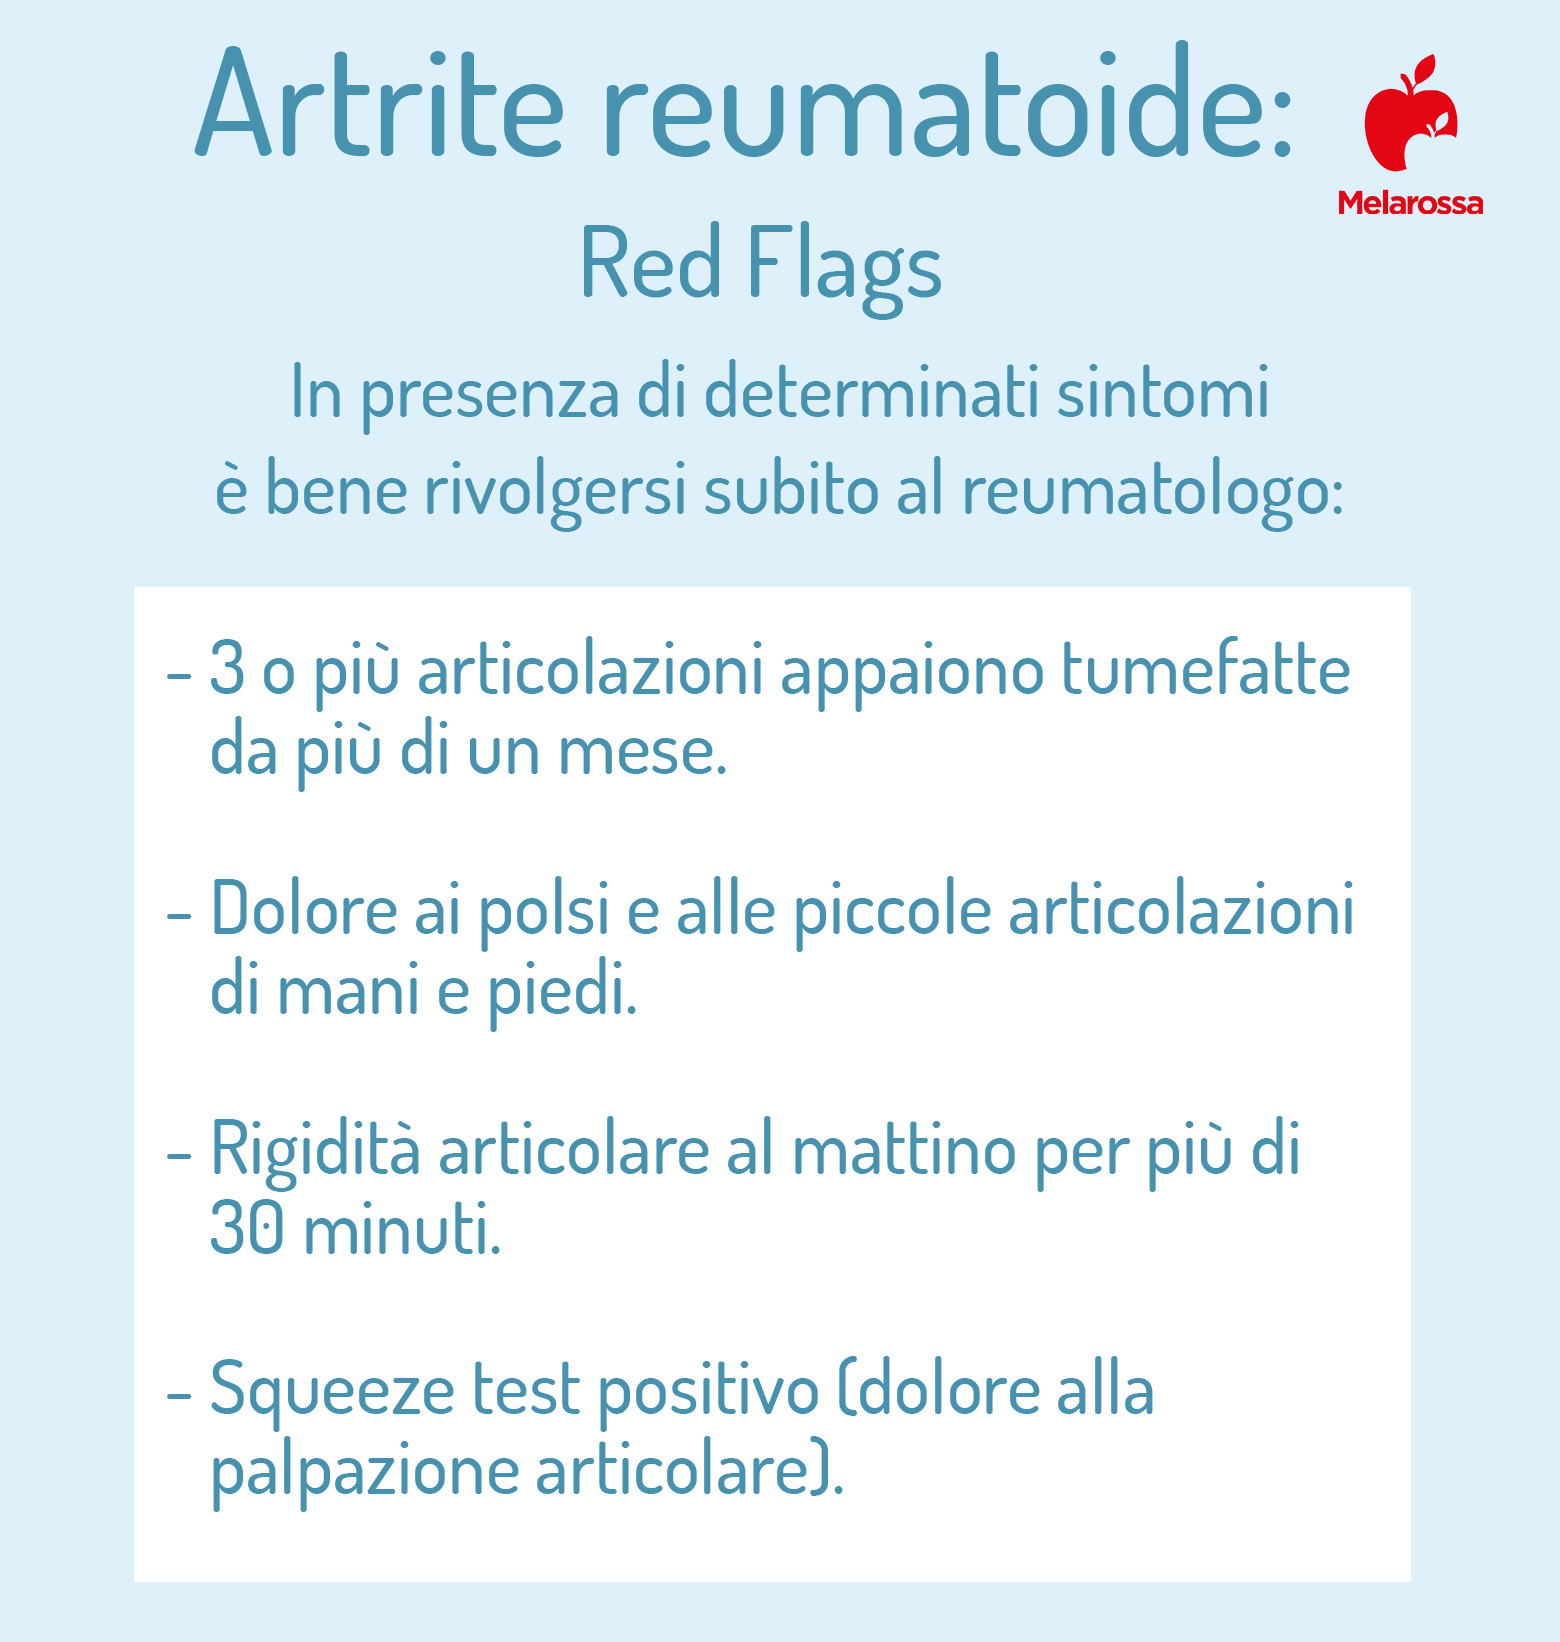 artrite reumatoide: quando consultare il reumatologo